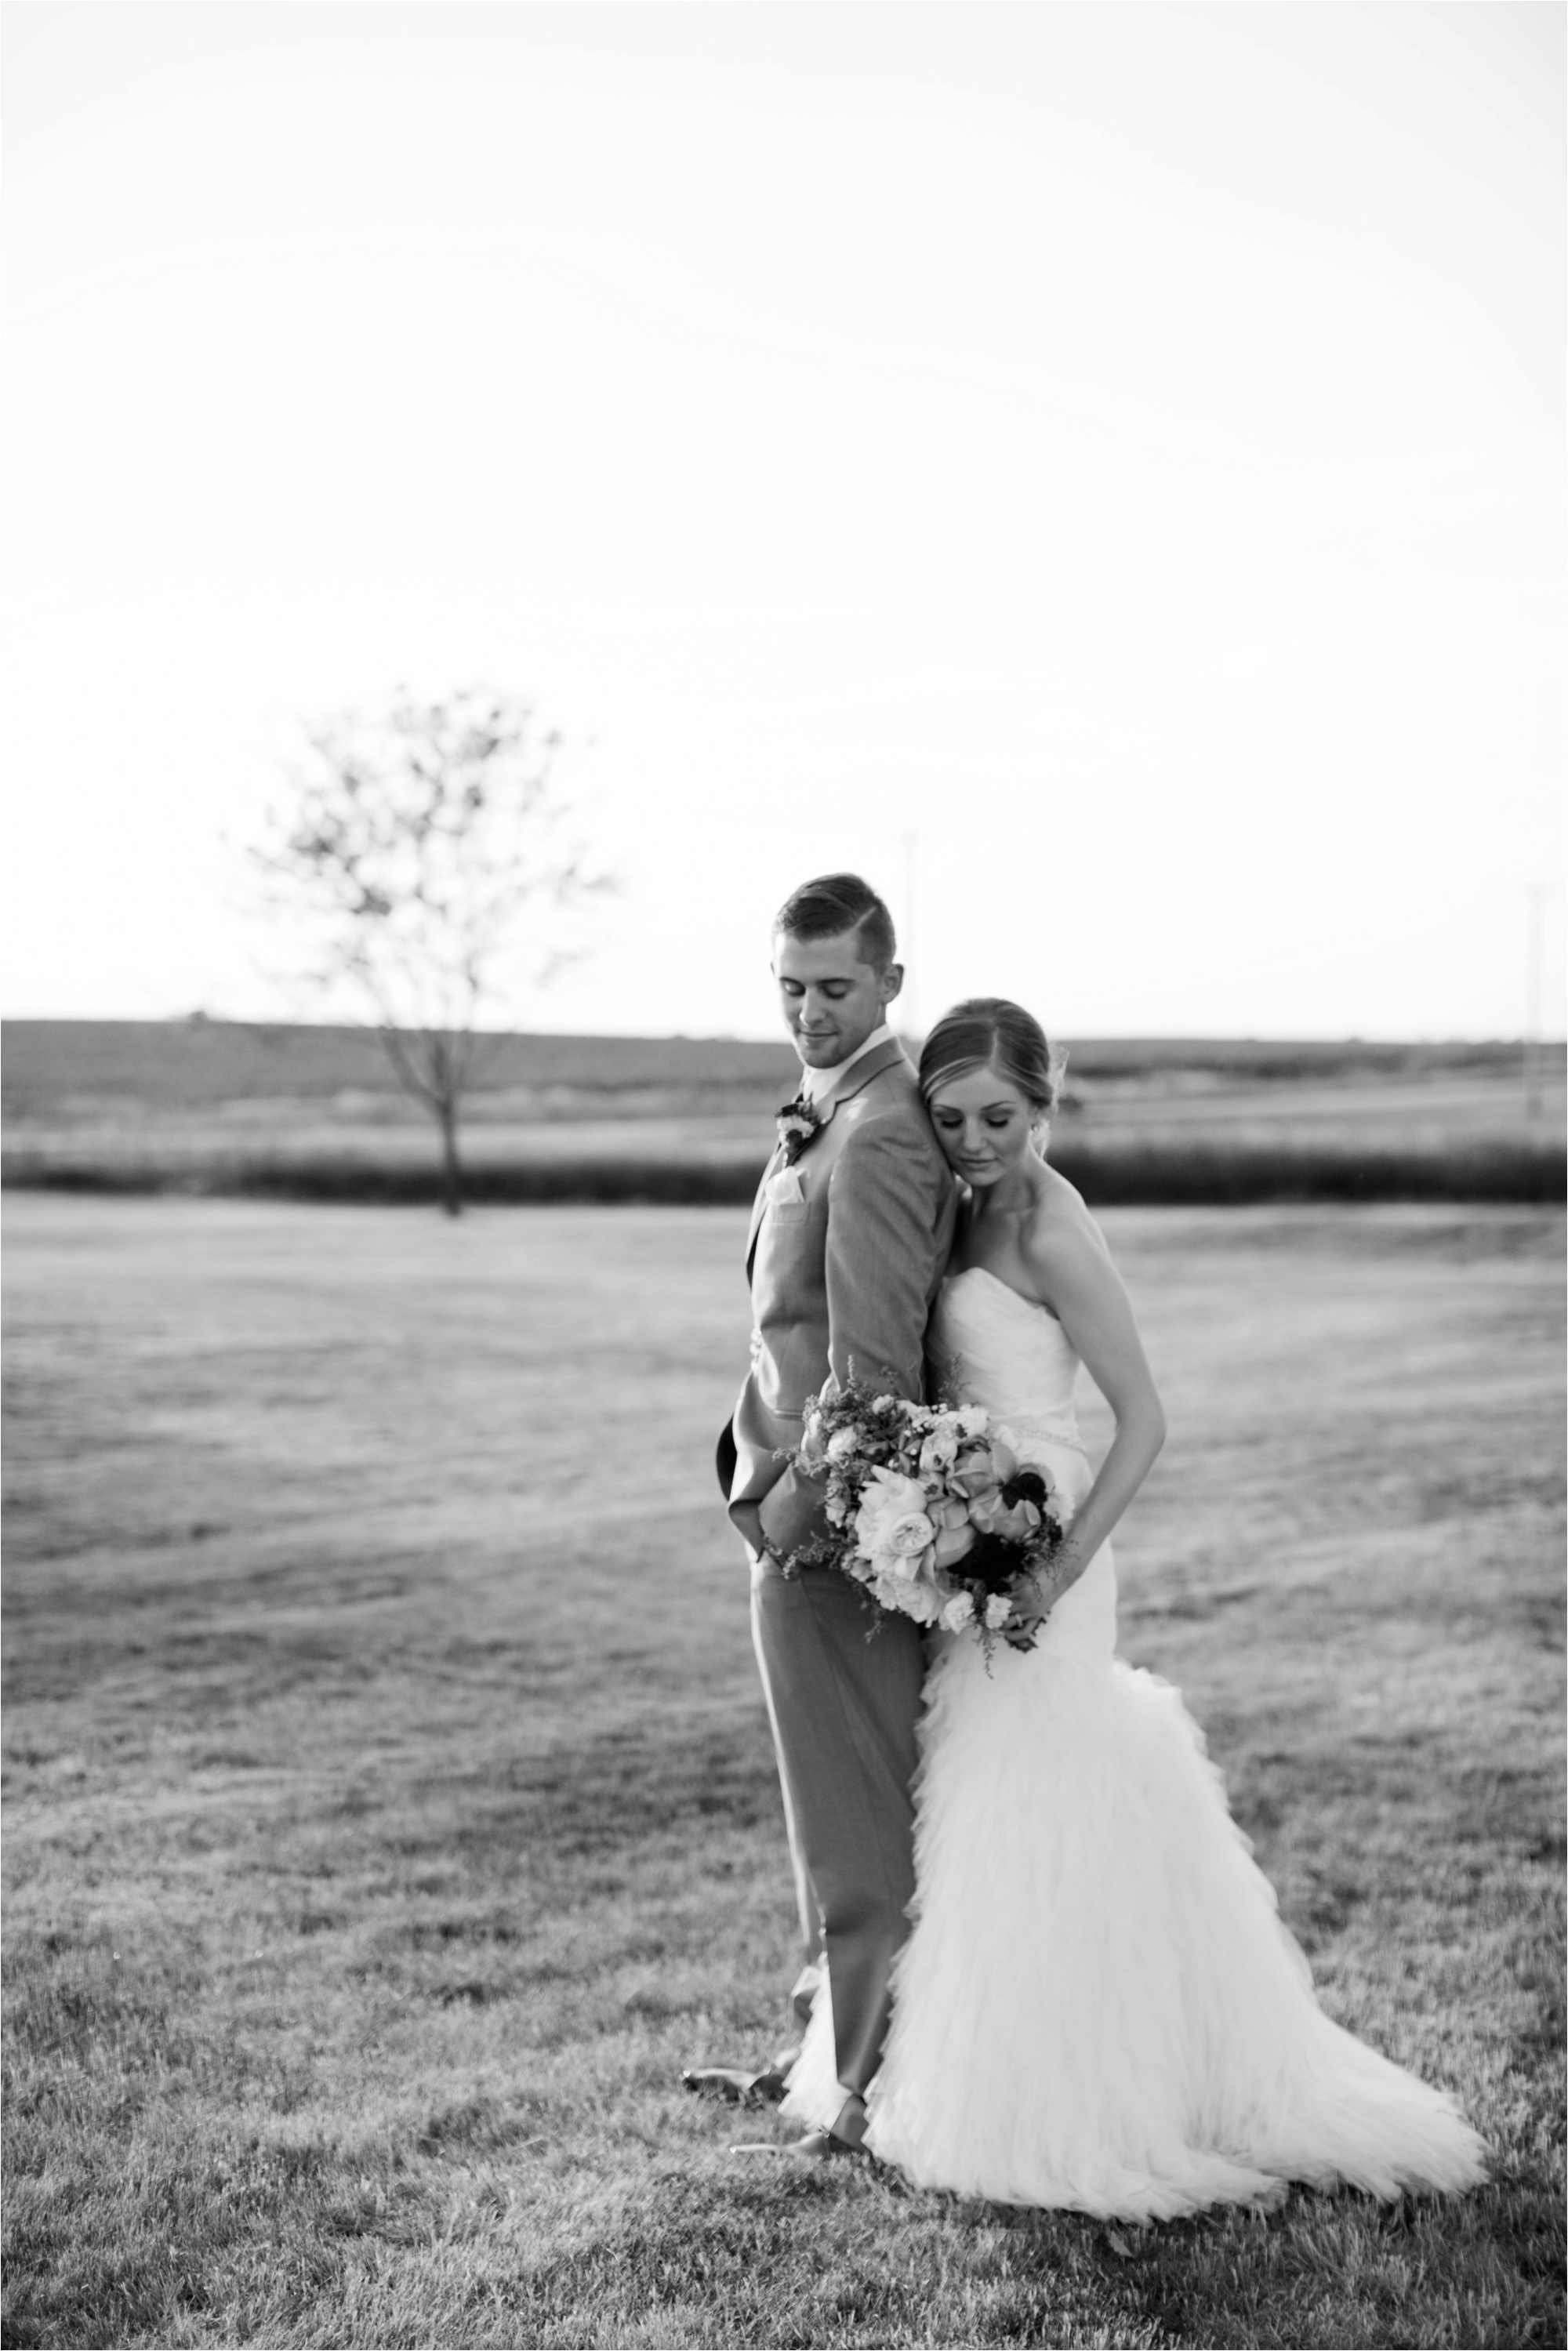 Caitlin and Luke Photography, Bloomington Normal Wedding Photographers, Illinois Wedding Photographers, Illinois Husband and Wife Wedding Photography Team_0347.jpg